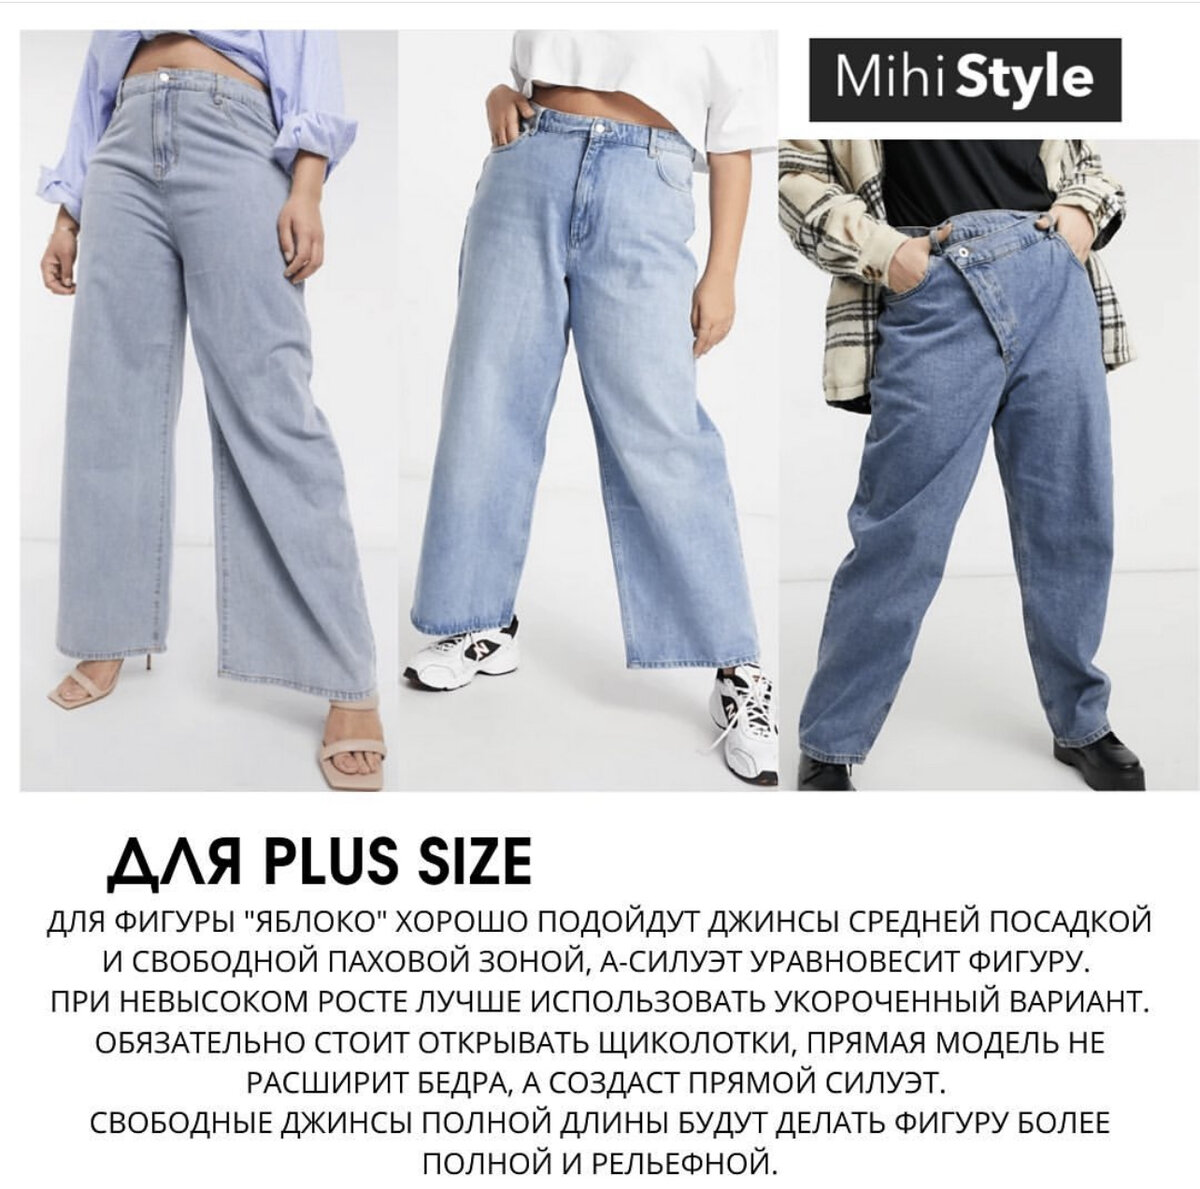 Как подвернуть джинсы, чтоб выглядеть стильно и обаятельно?